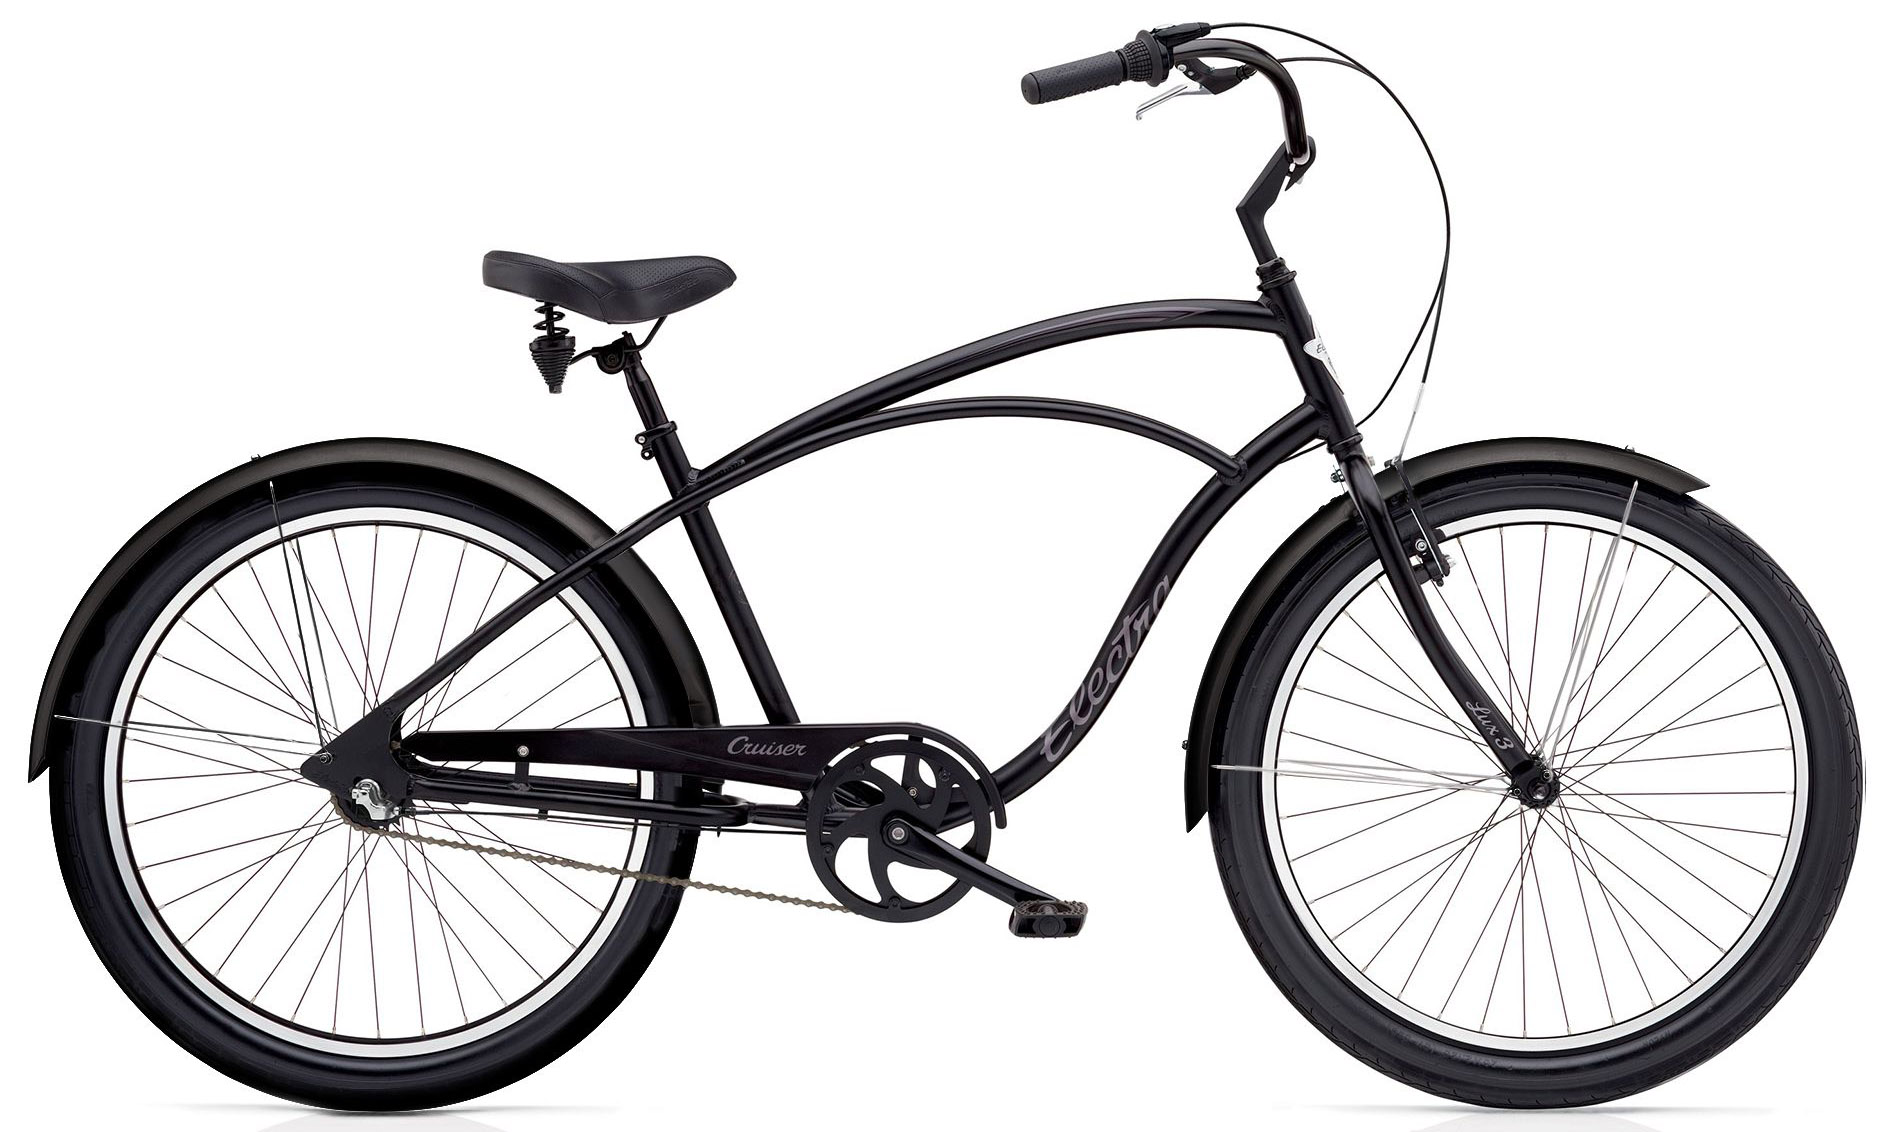  Отзывы о Городском велосипеде Electra Cruiser Lux 1 Mens 2020